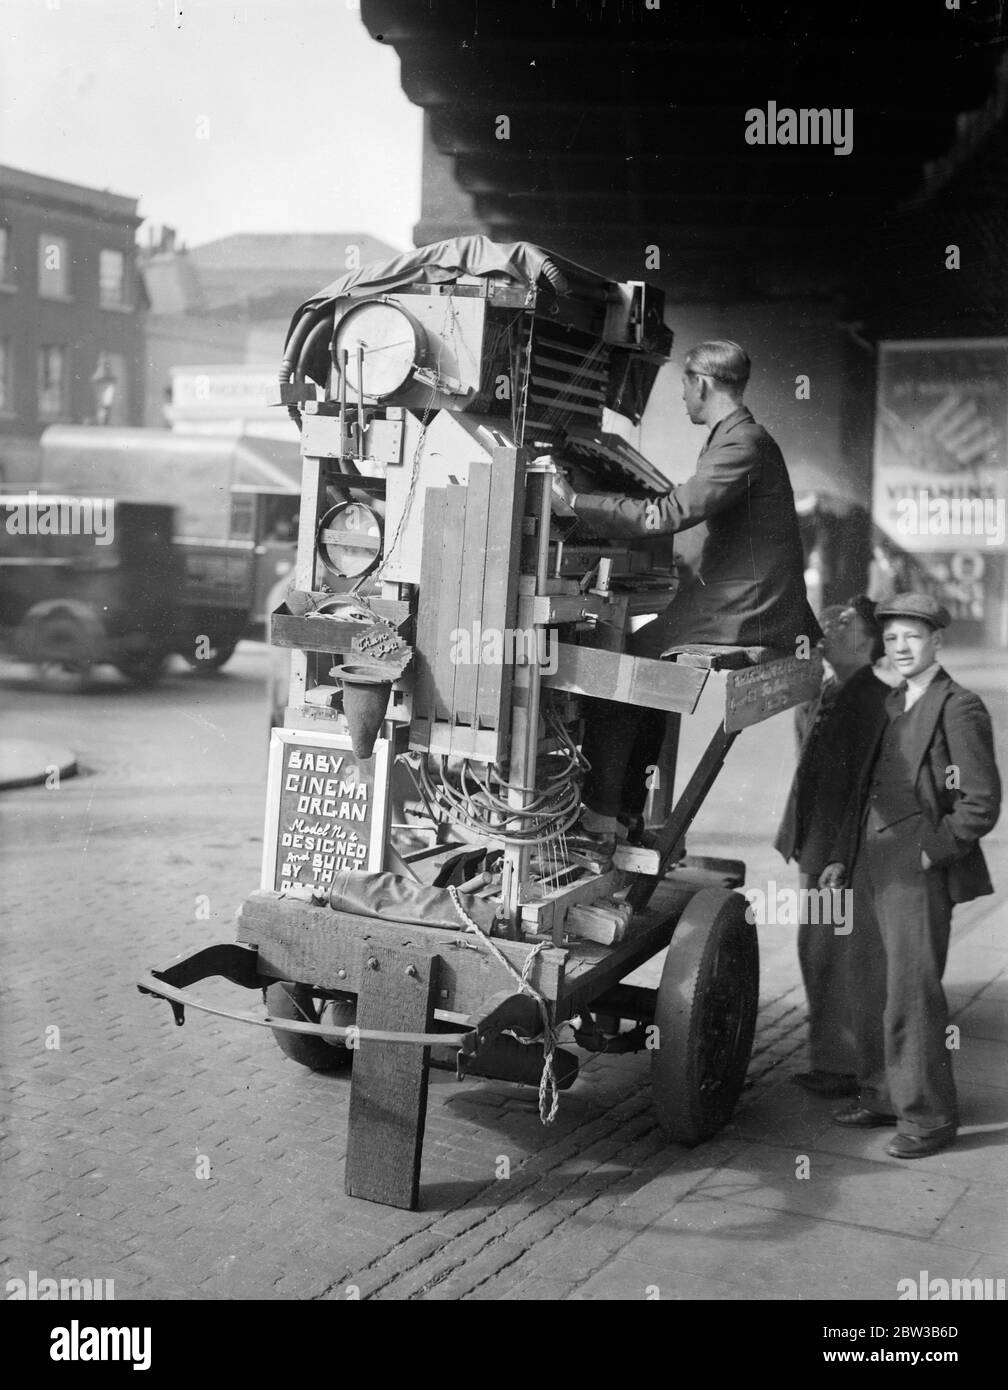 Orgue de cinéma miniature , fait de chance et de fin , jouant à Waterloo , Londres . 9 octobre 1934 . Banque D'Images